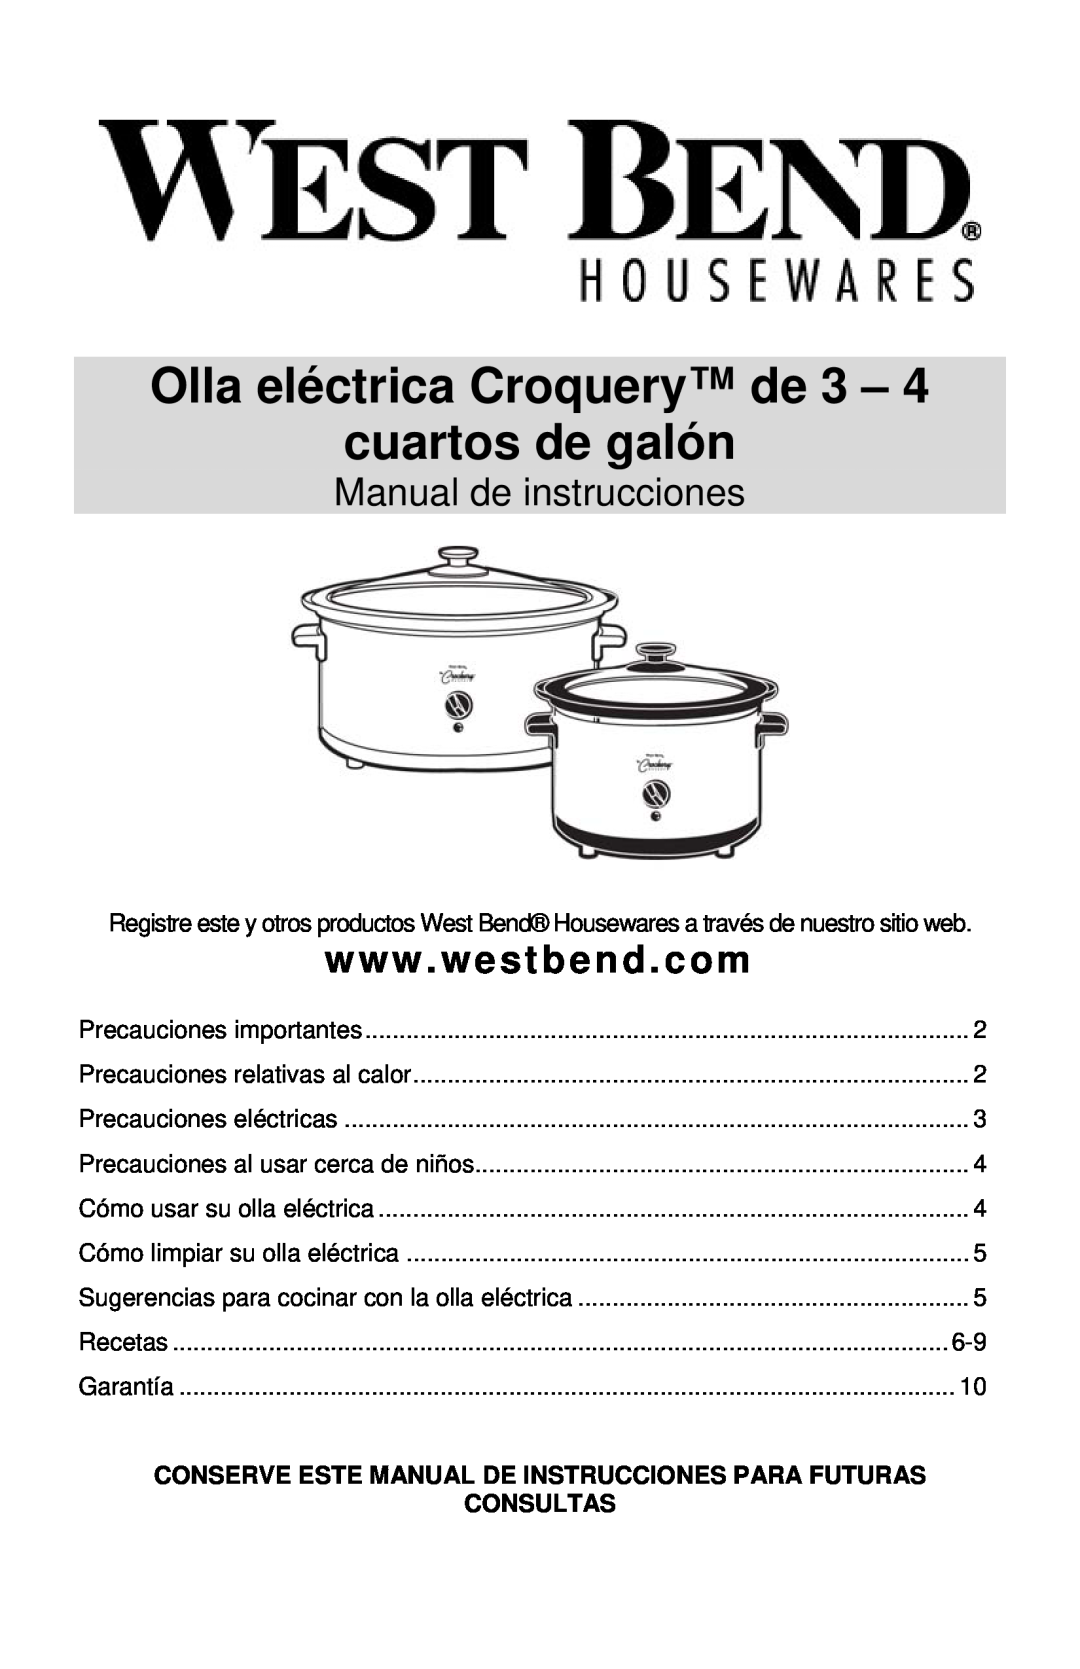 West Bend Cooker instruction manual Olla eléctrica Croquery de 3 – cuartos de galón, Manual de instrucciones, Consultas 